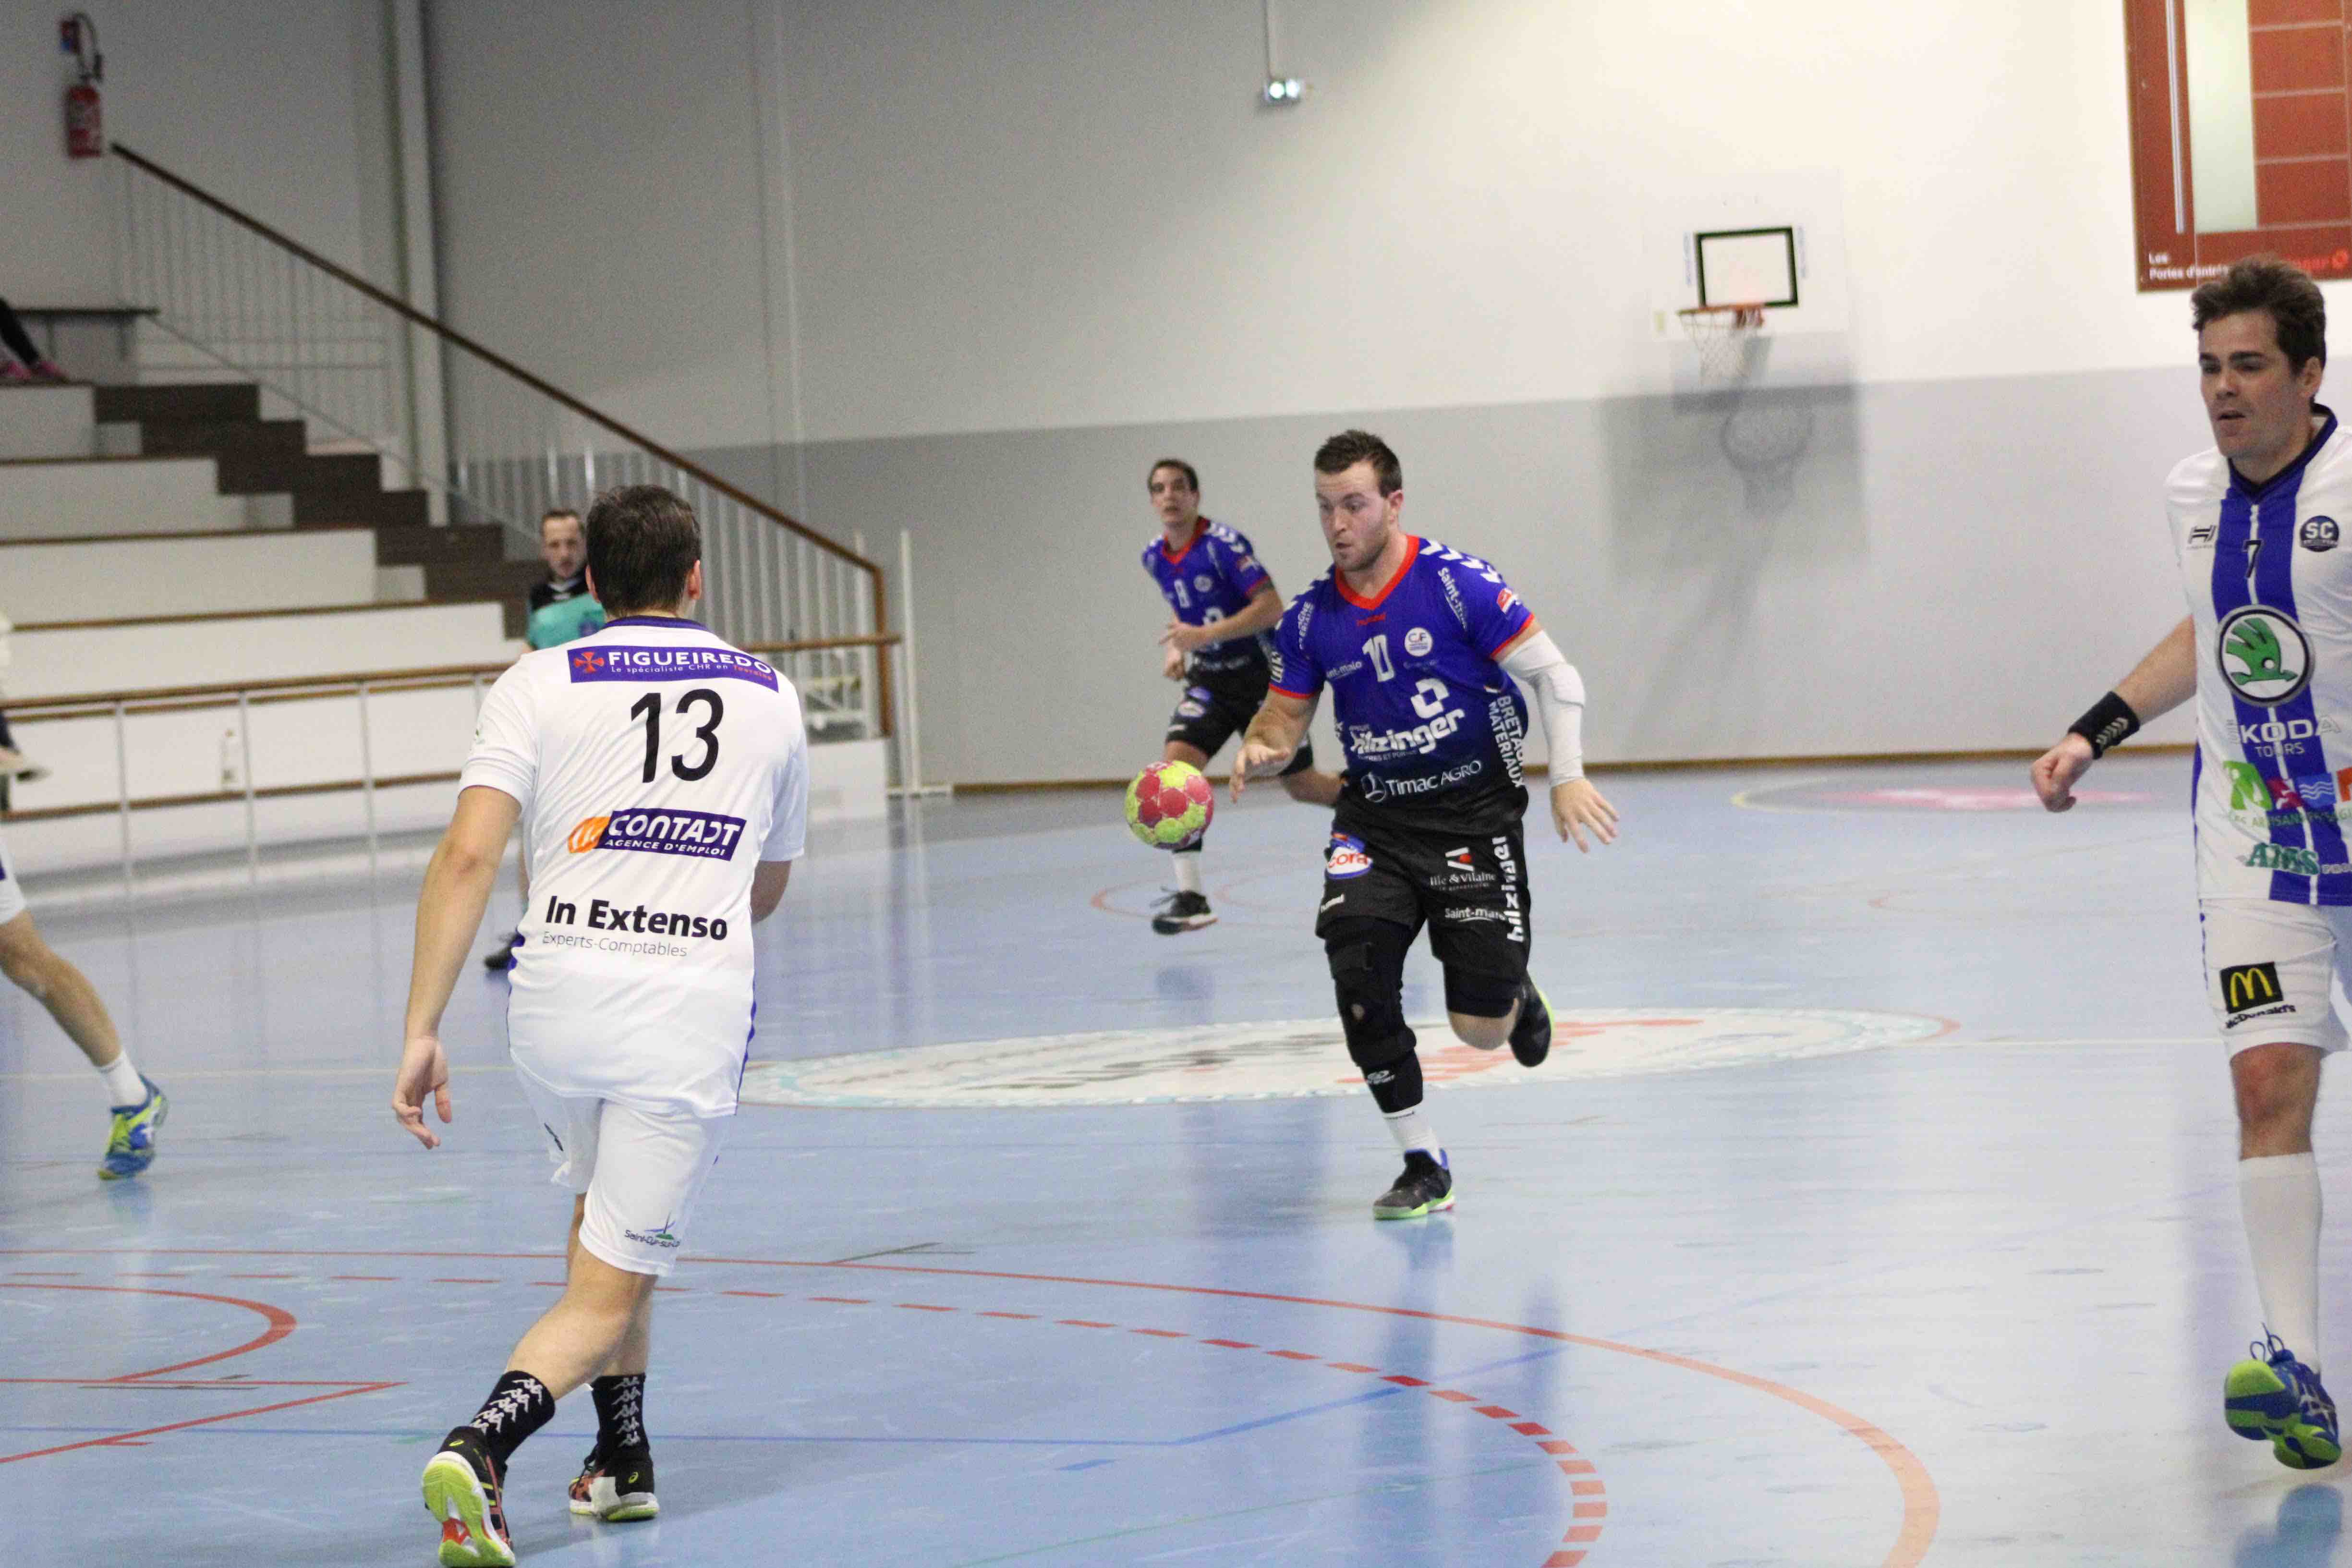 2019nov23 CJF hb _ SC handball (176)